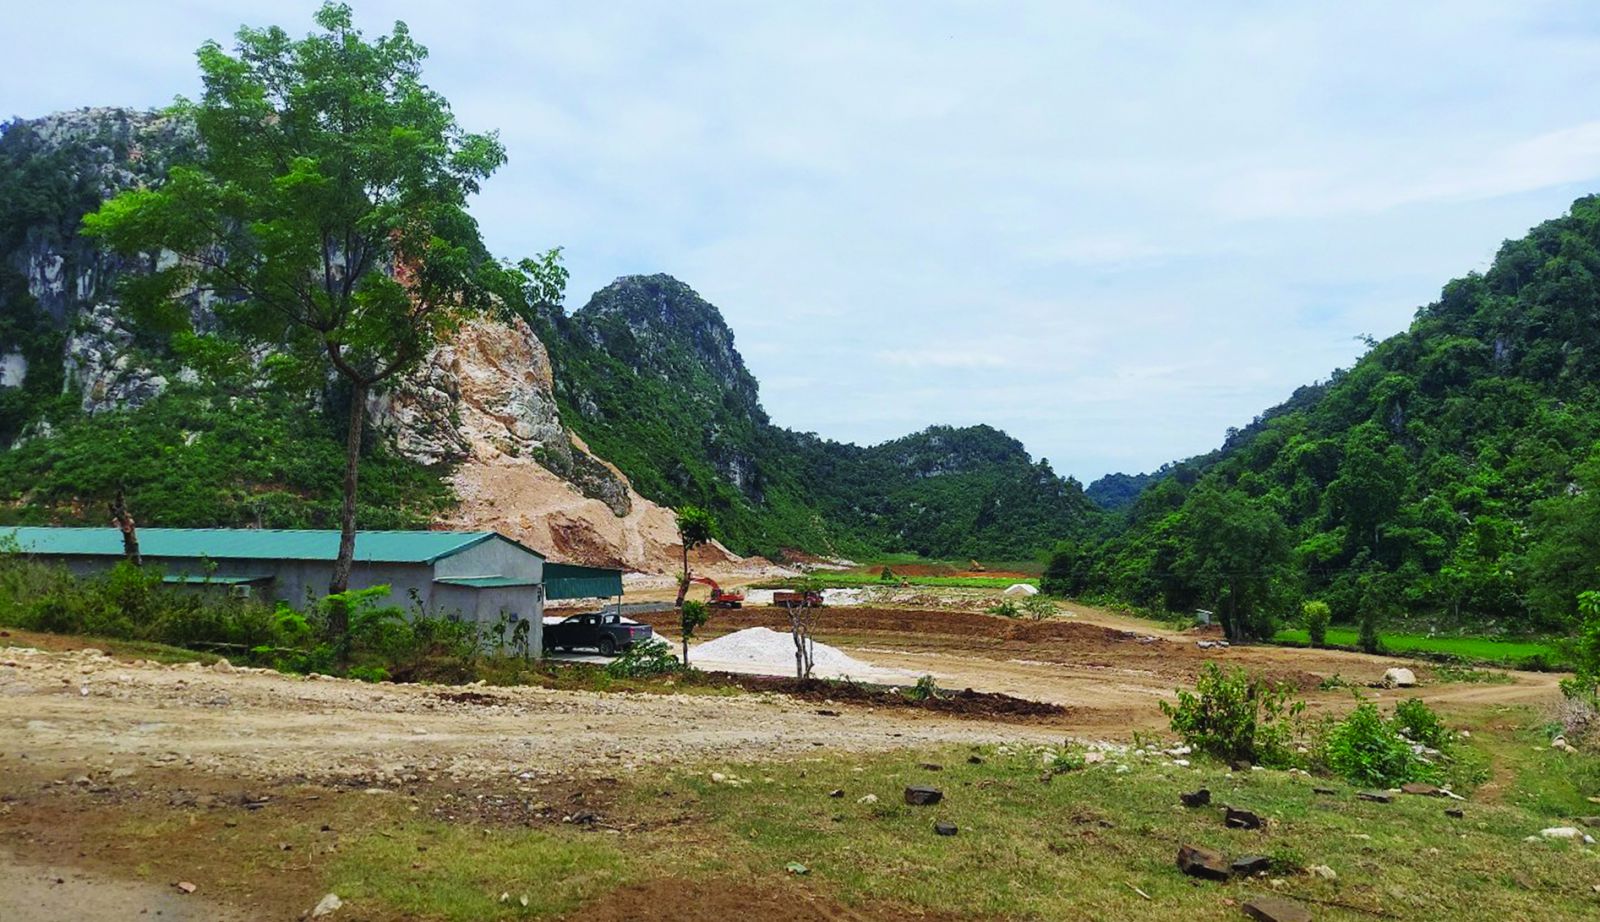 p/Dự án đầu tư khai thác mỏ đá tại khu vực Thung Vượt, xã Tân Hợp, huyện Tân Kỳ được tỉnh Nghệ An chấp thuận cho Công ty Sơn Nam từ năm 2011 nhưng suốt nhiều năm qua vẫn chưa thể hoàn thiện thủ tục thuê đất